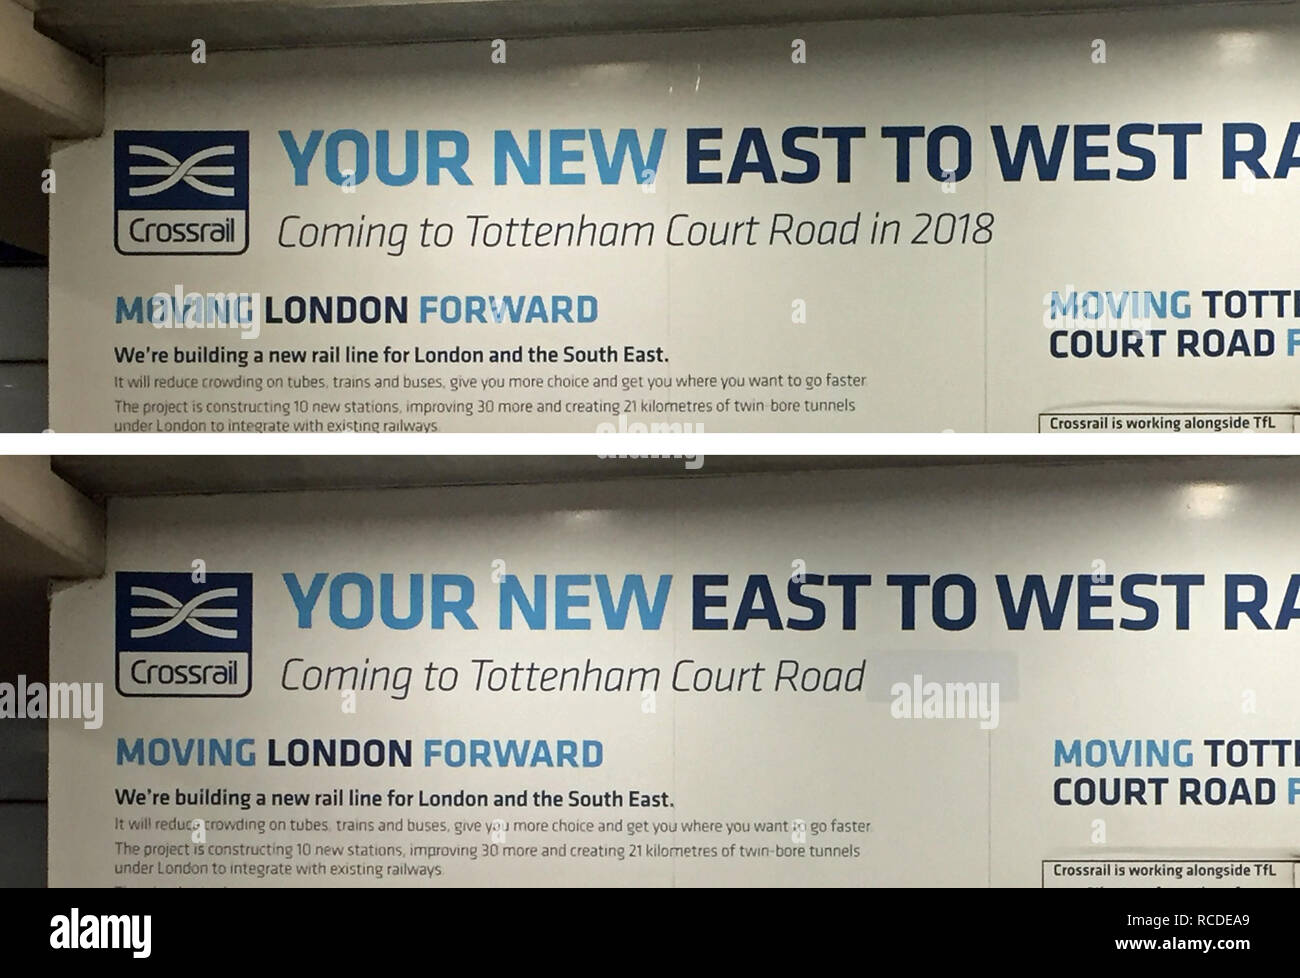 Undatierte Bilder vor (oben) und nach der Traverse signage in der Londoner U-Bahnstation Tottenham Court Road mit Verweisen auf Crossrail Eröffnung im Dezember 2018 oben bedeckt. Stockfoto